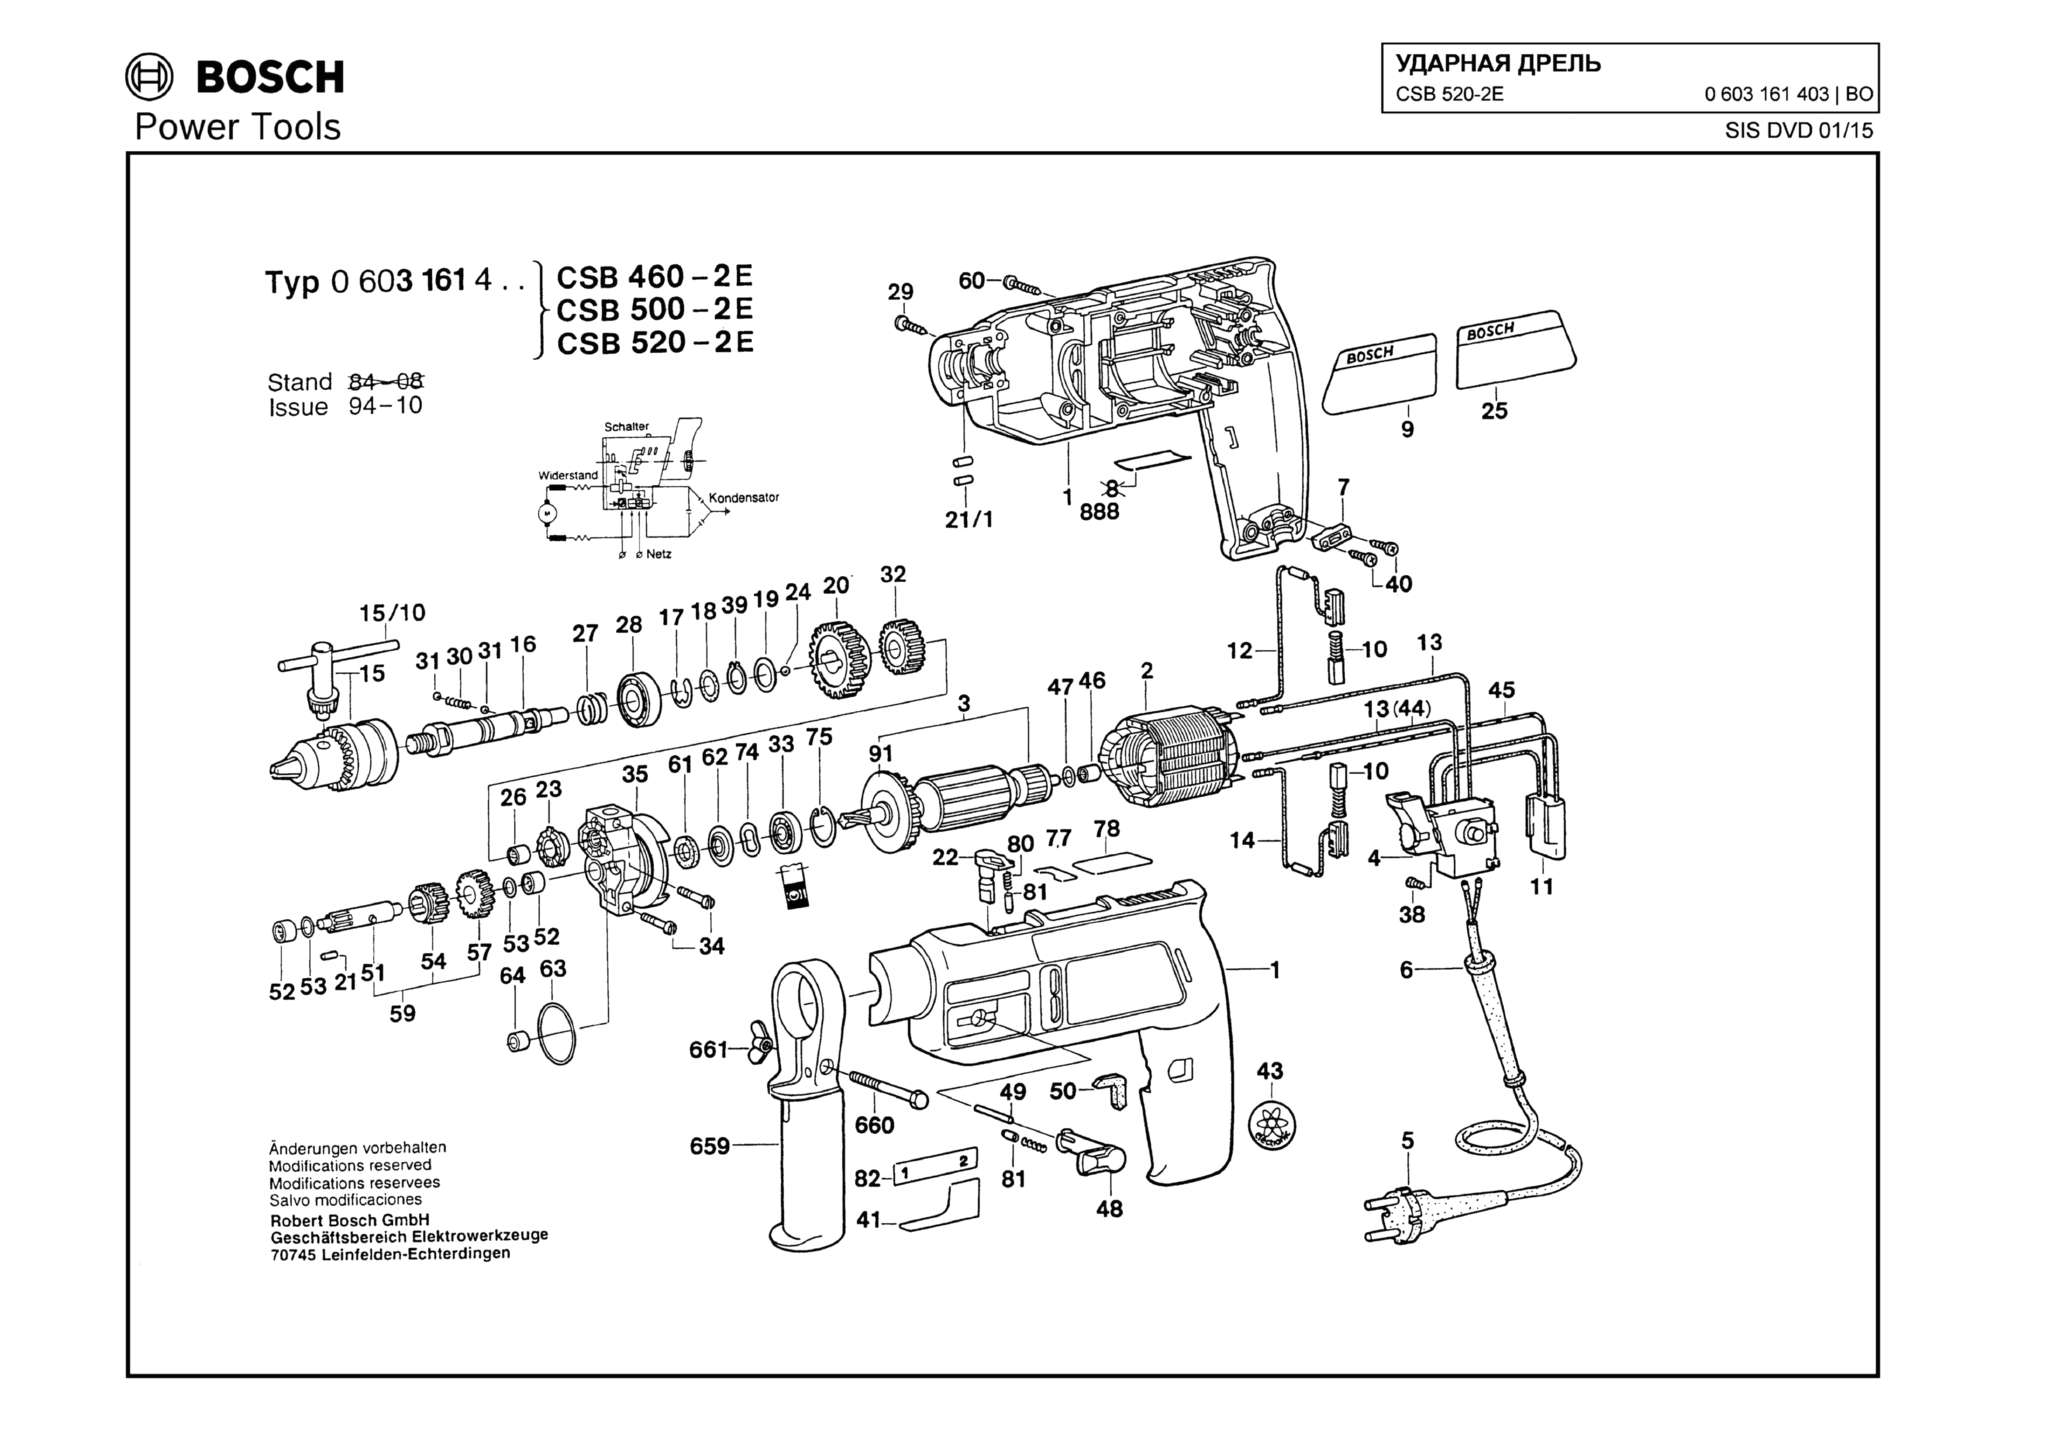 Запчасти, схема и деталировка Bosch CSB 520-2E (ТИП 0603161403)